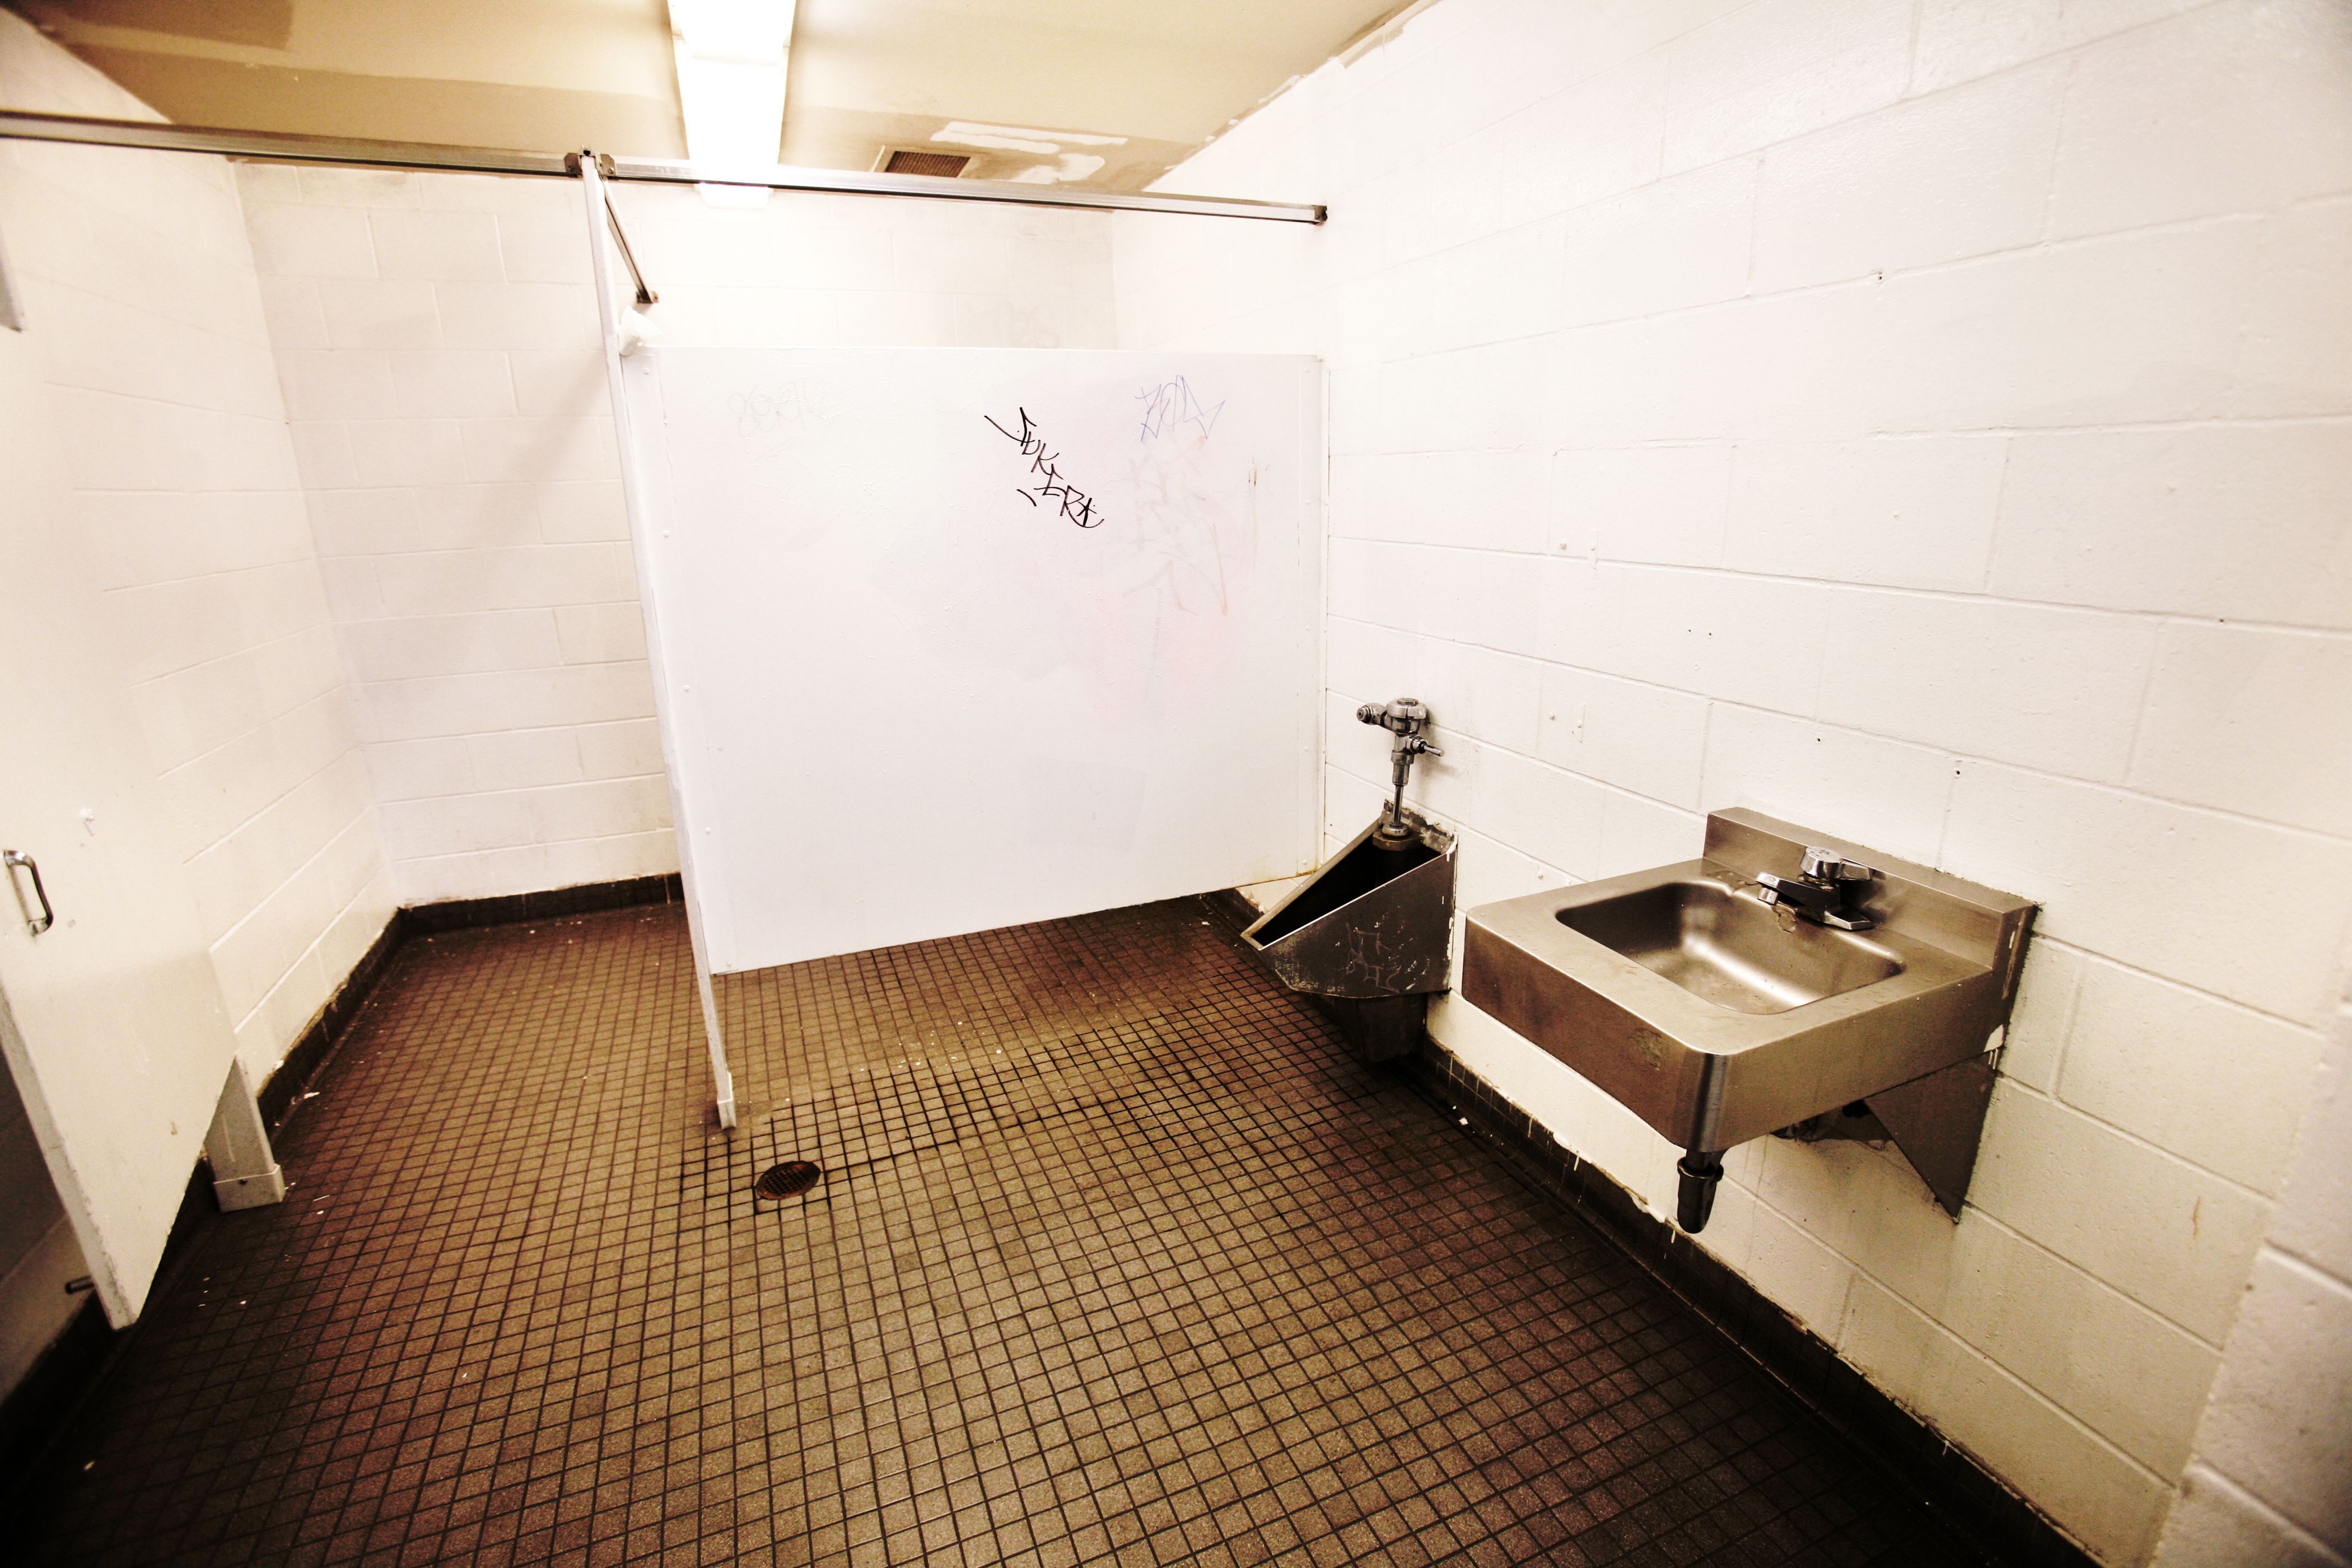 Молодые ученые BT говорят, что граффити в ванной оказывают «душераздирающее» негативное воздействие на студентов